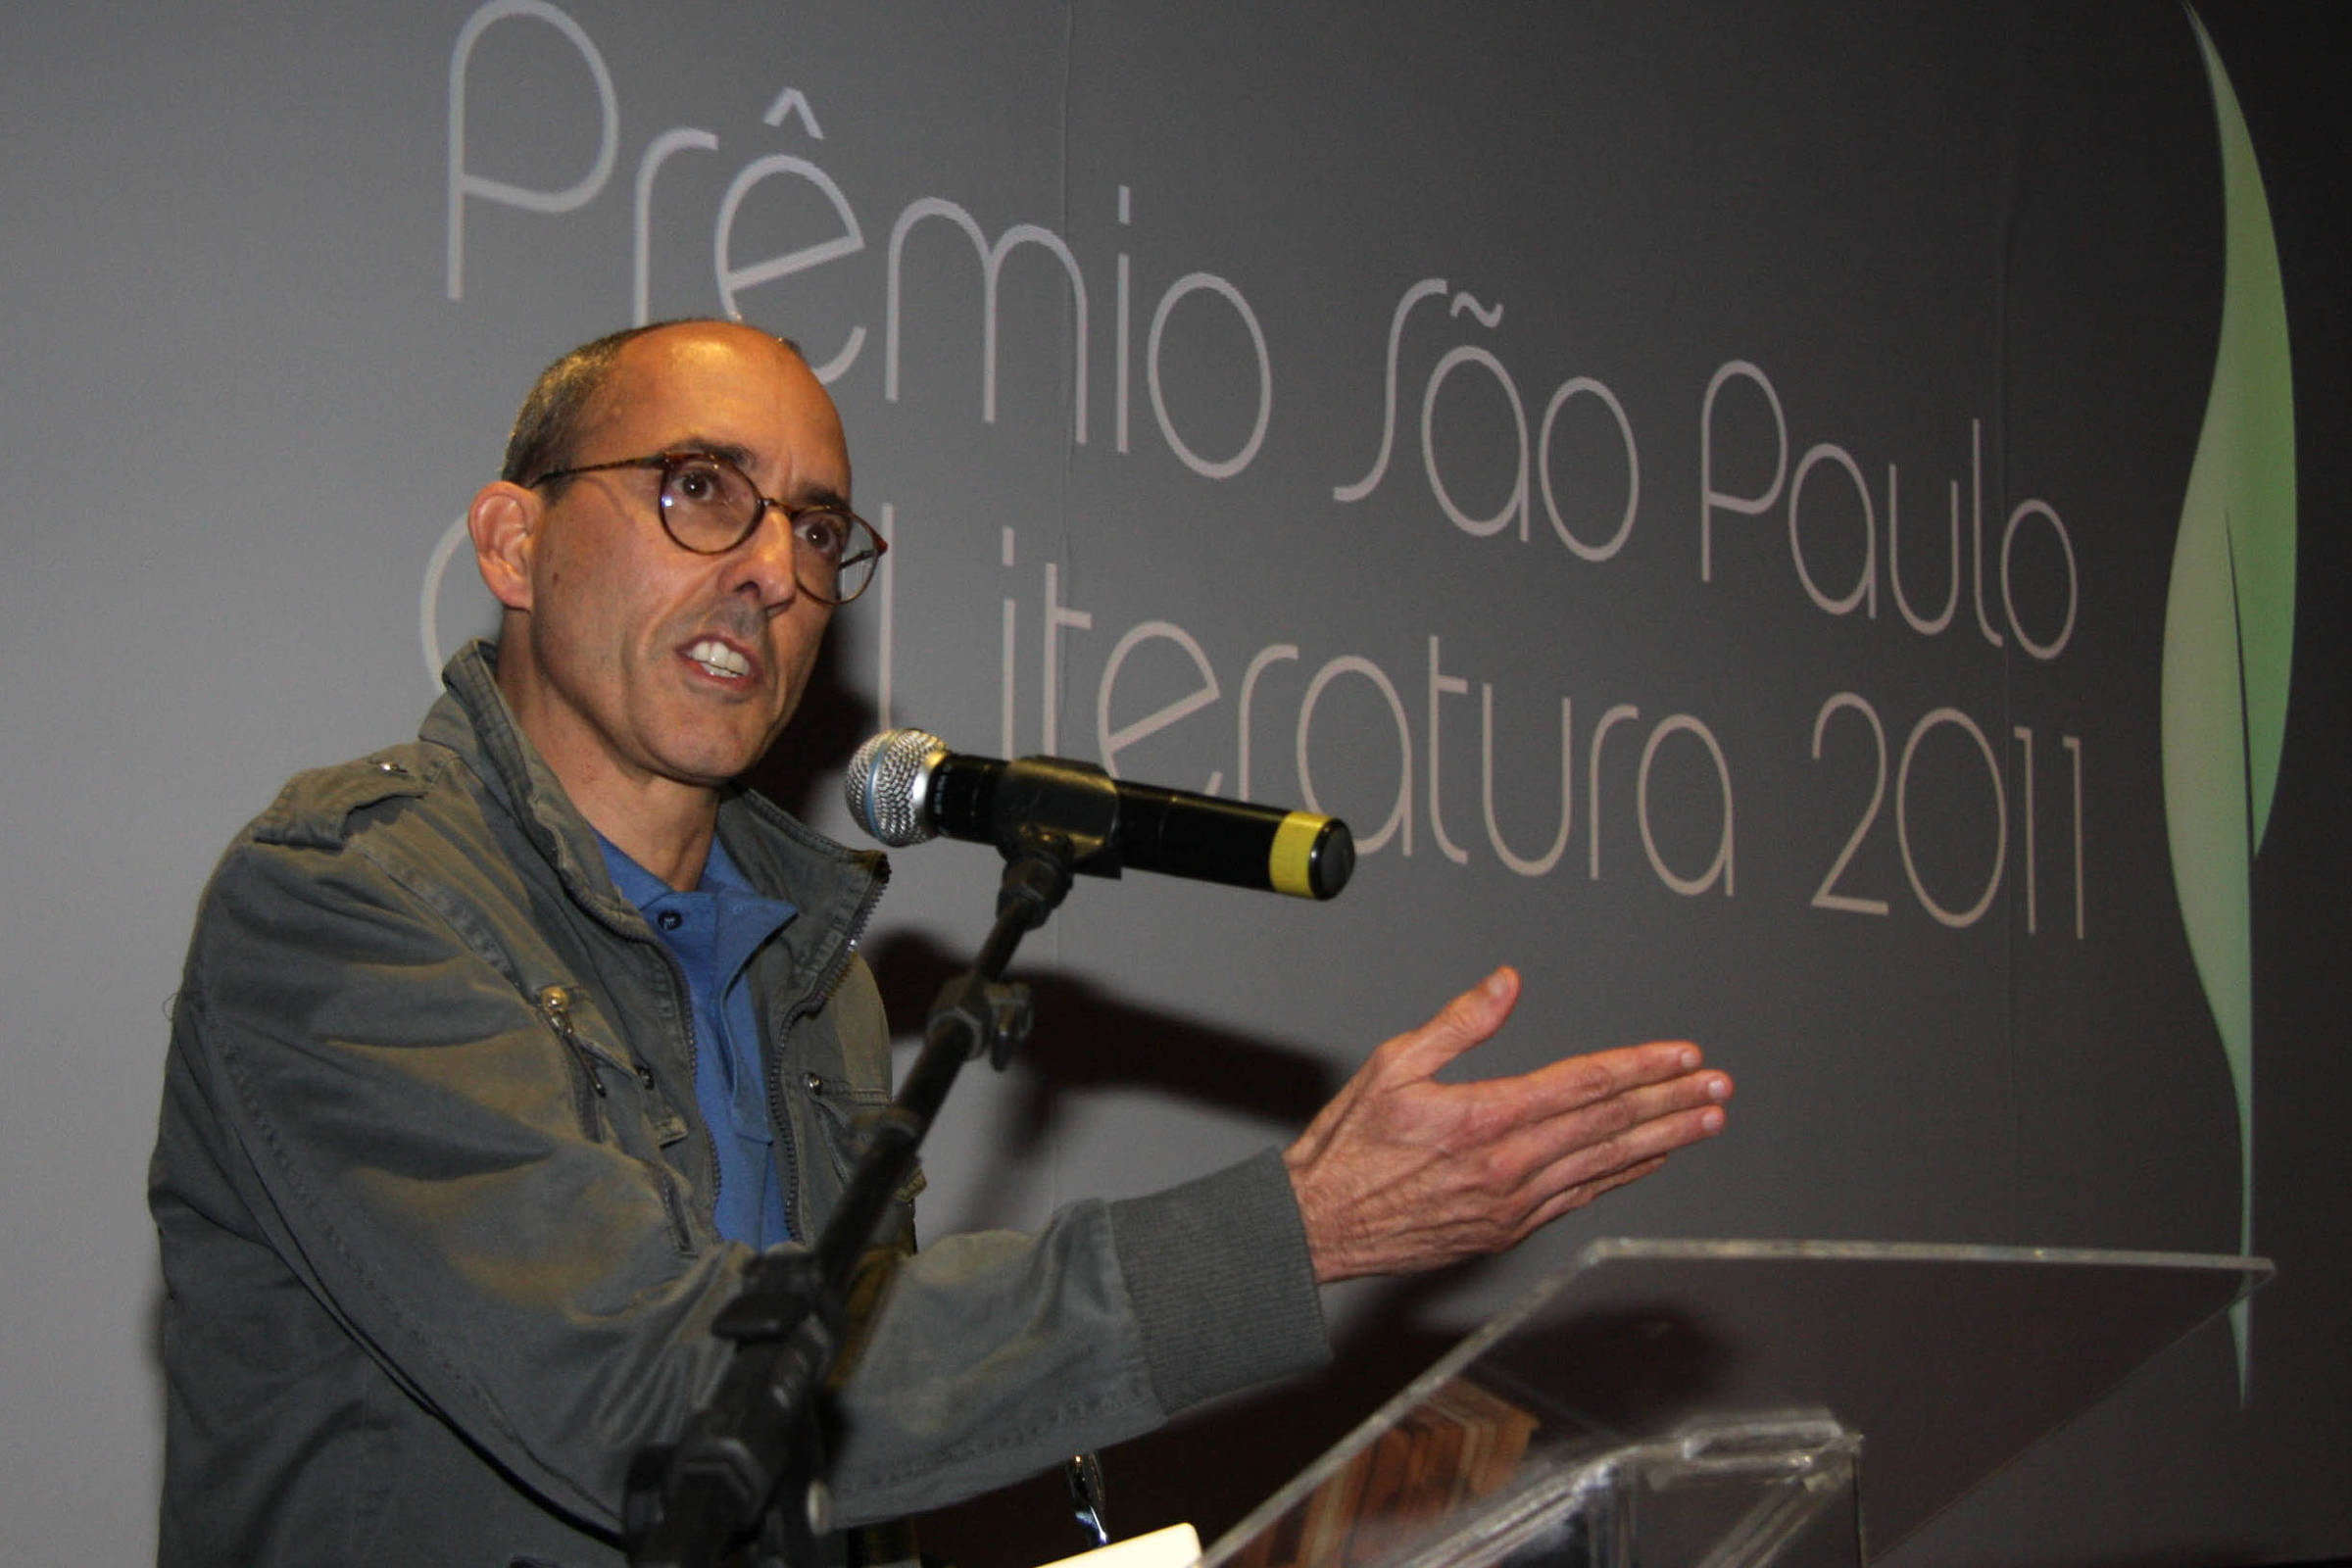 O professor e escritor Rubens Figueiredo recebe o Prêmio São Paulo de Literatura por seu romance “Passageiro do Fim do Dia” (Companhia das Letras), em 2011